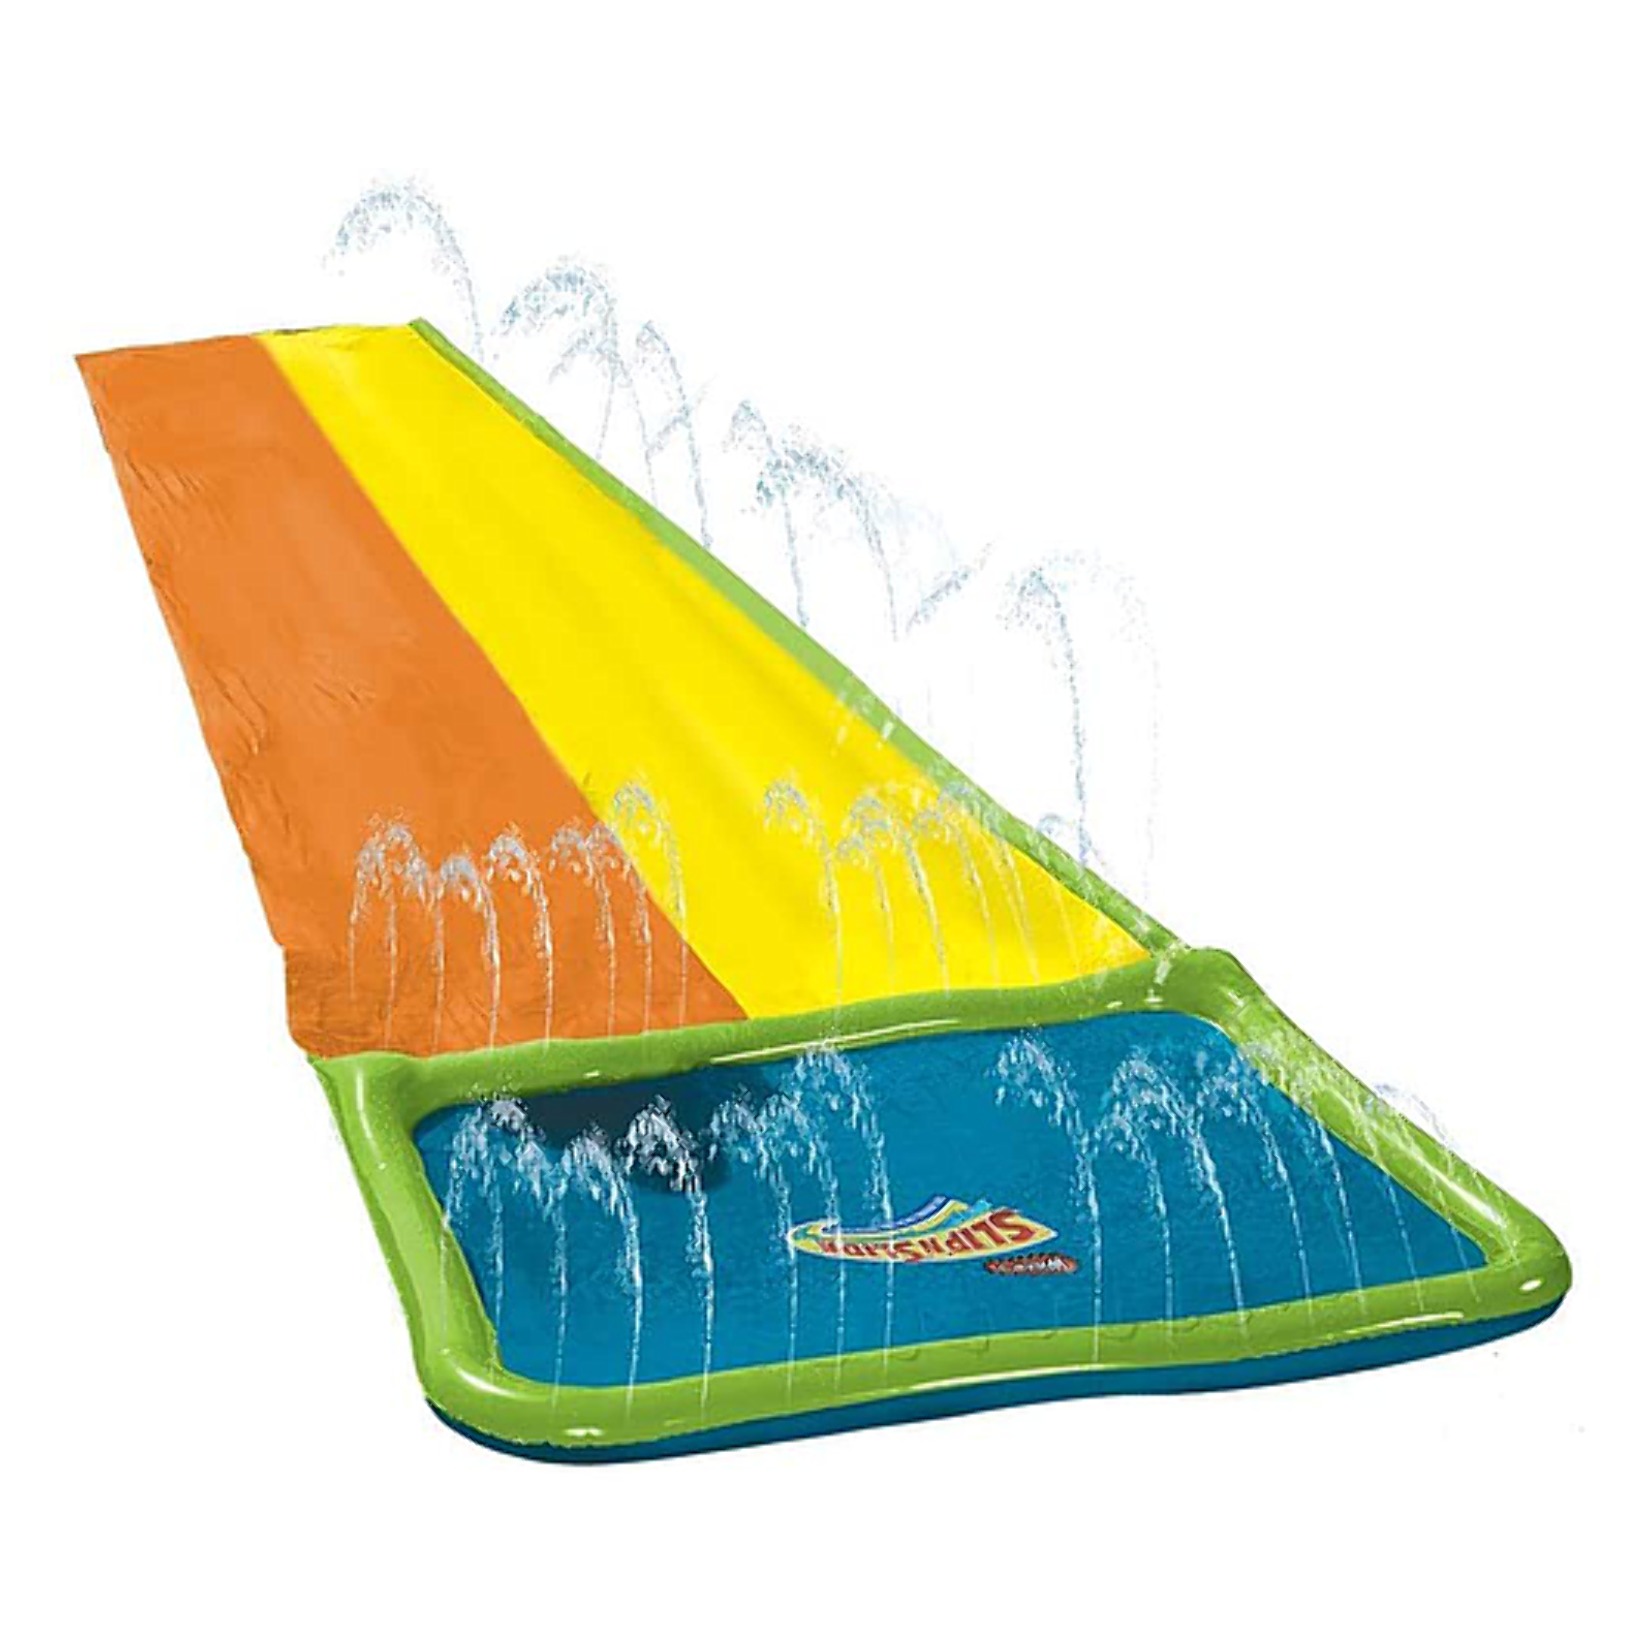 Wham-o 16ft Slip N Slide Double Wave Rider Water Slide